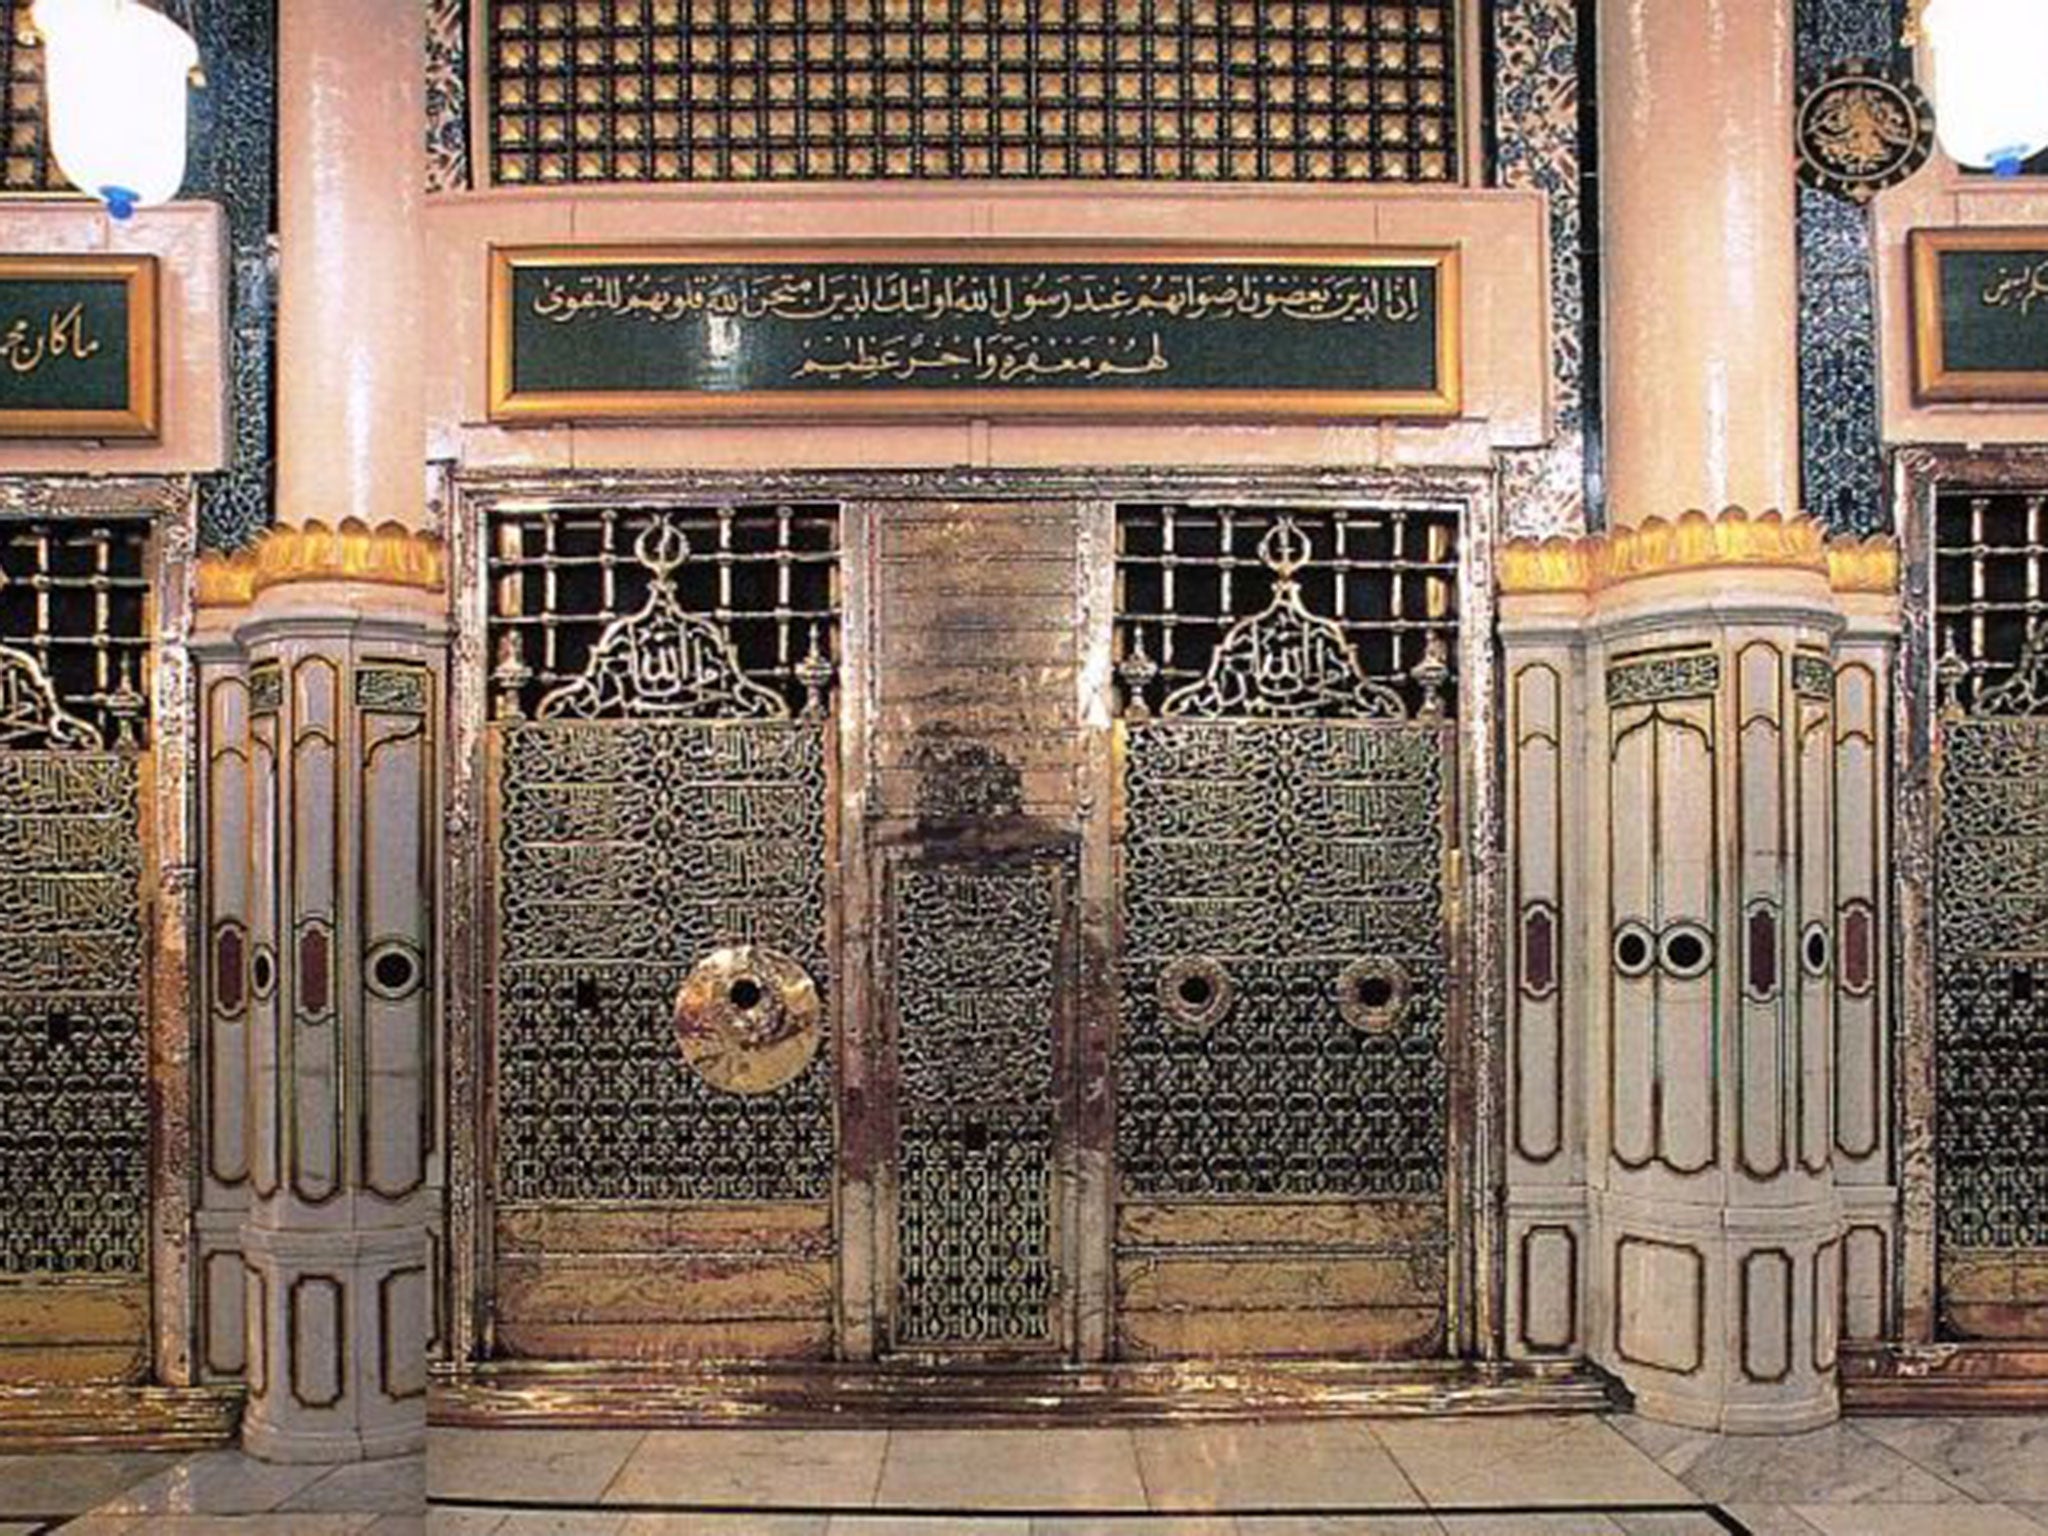 The Prophet Mohamed’s tomb